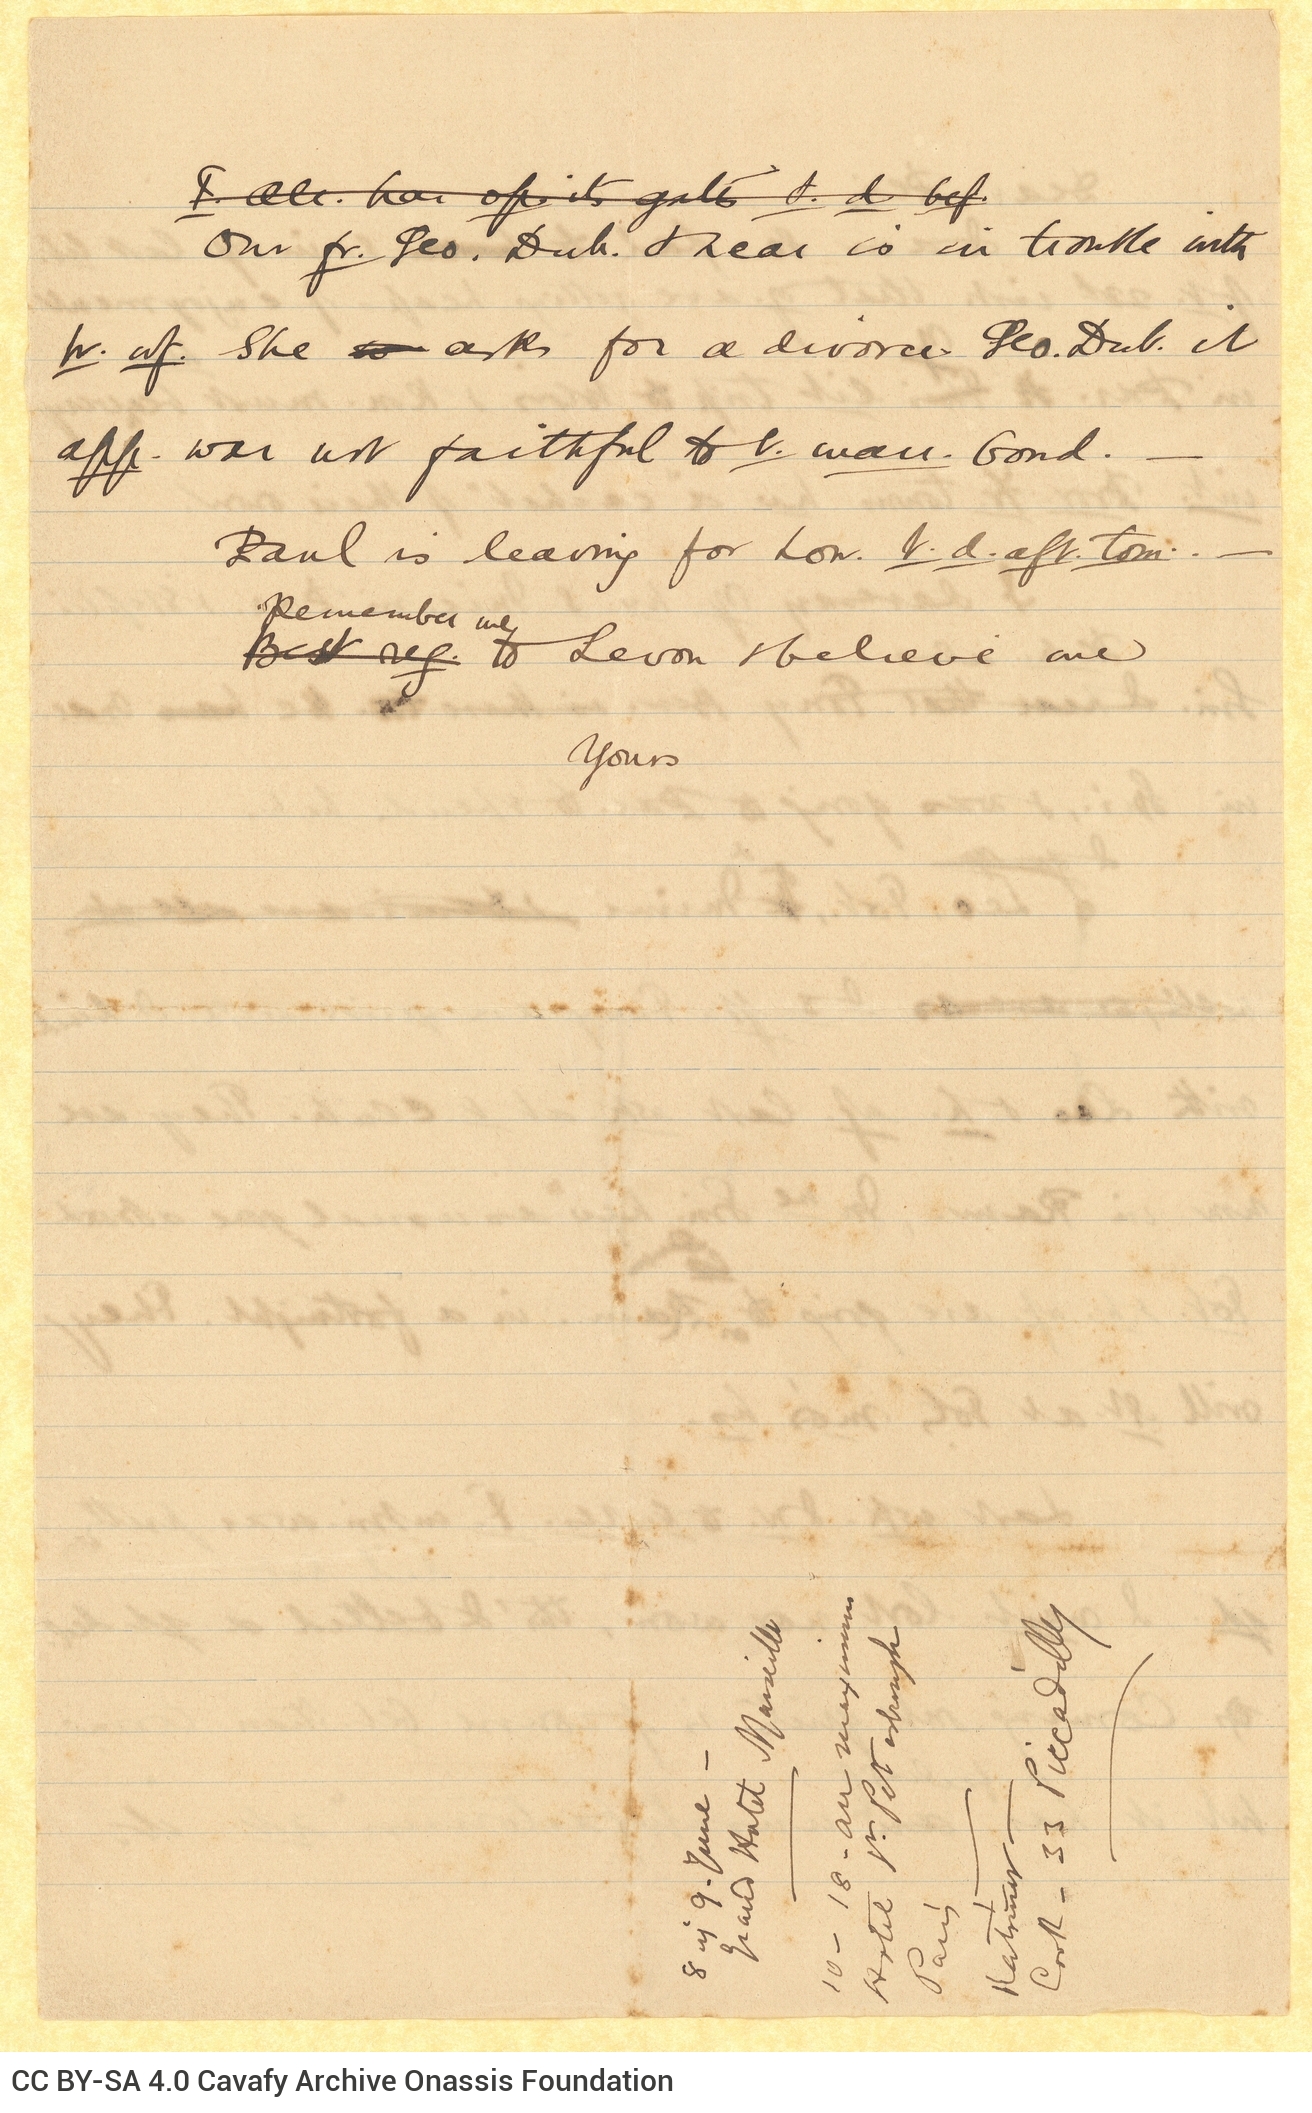 Χειρόγραφο σχέδιο επιστολής προς παραλήπτη που προσφωνείται «Peri» (π